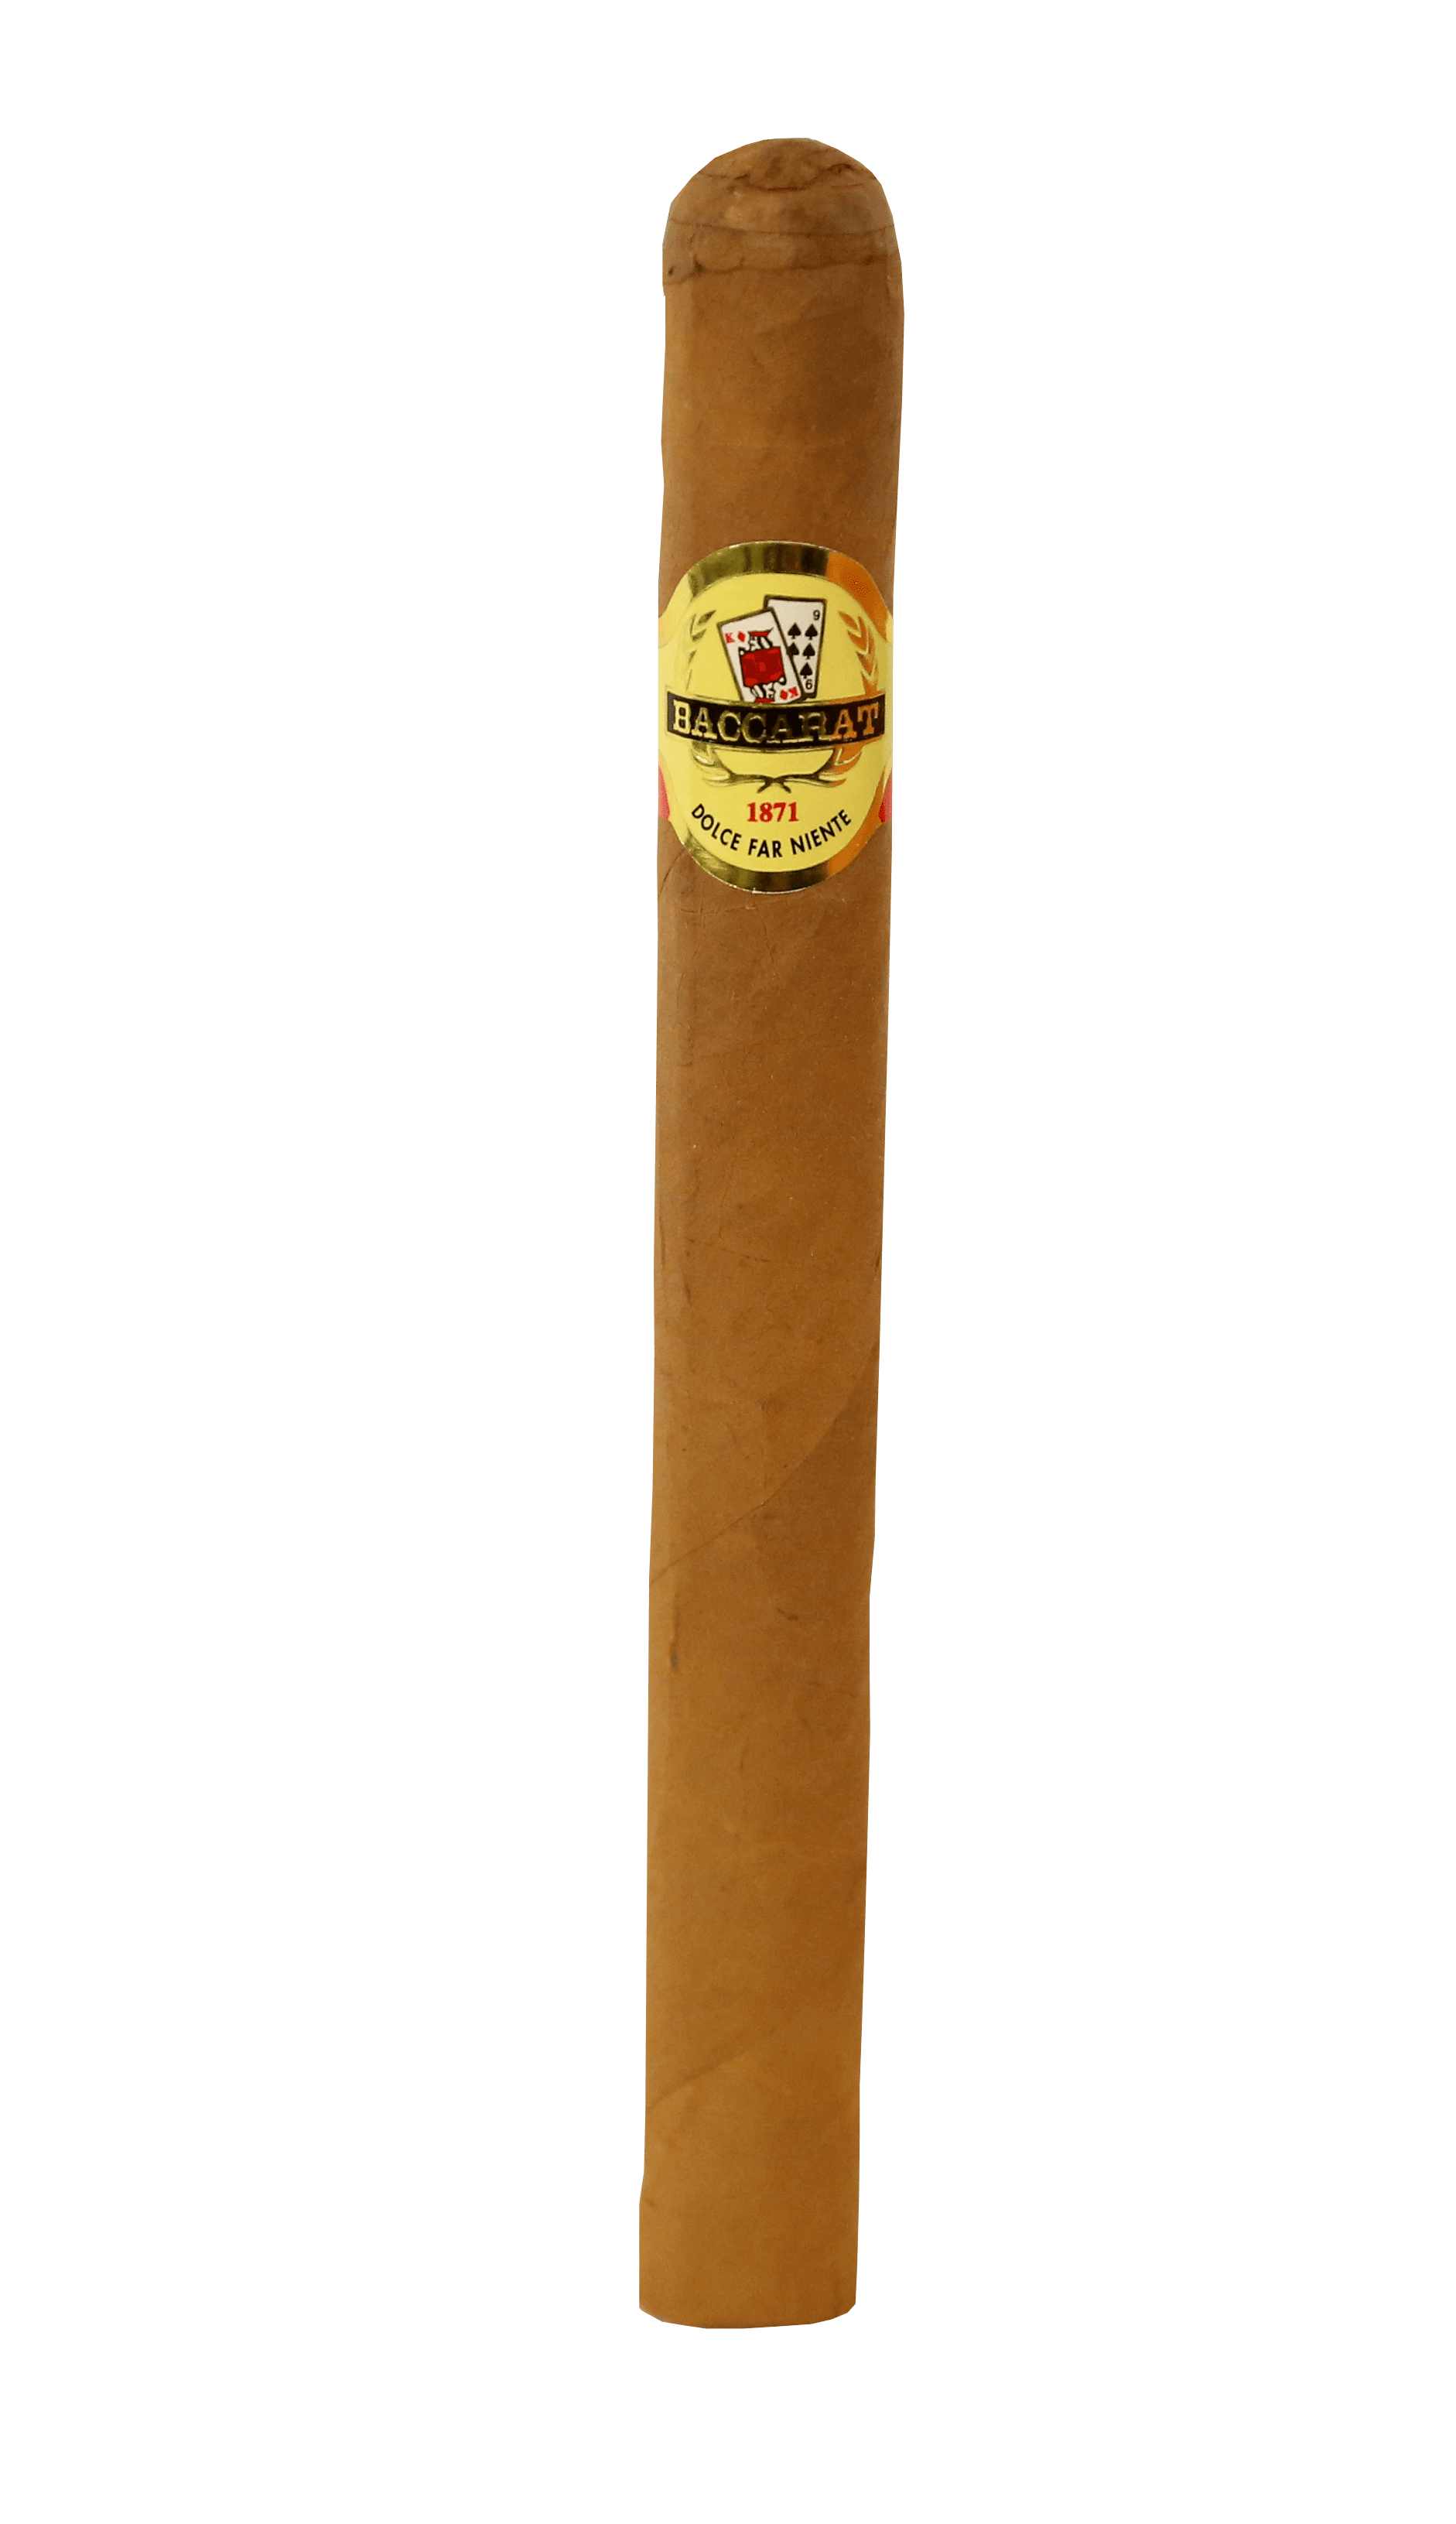 Single Baccarat Churchill Havana Selection cigar